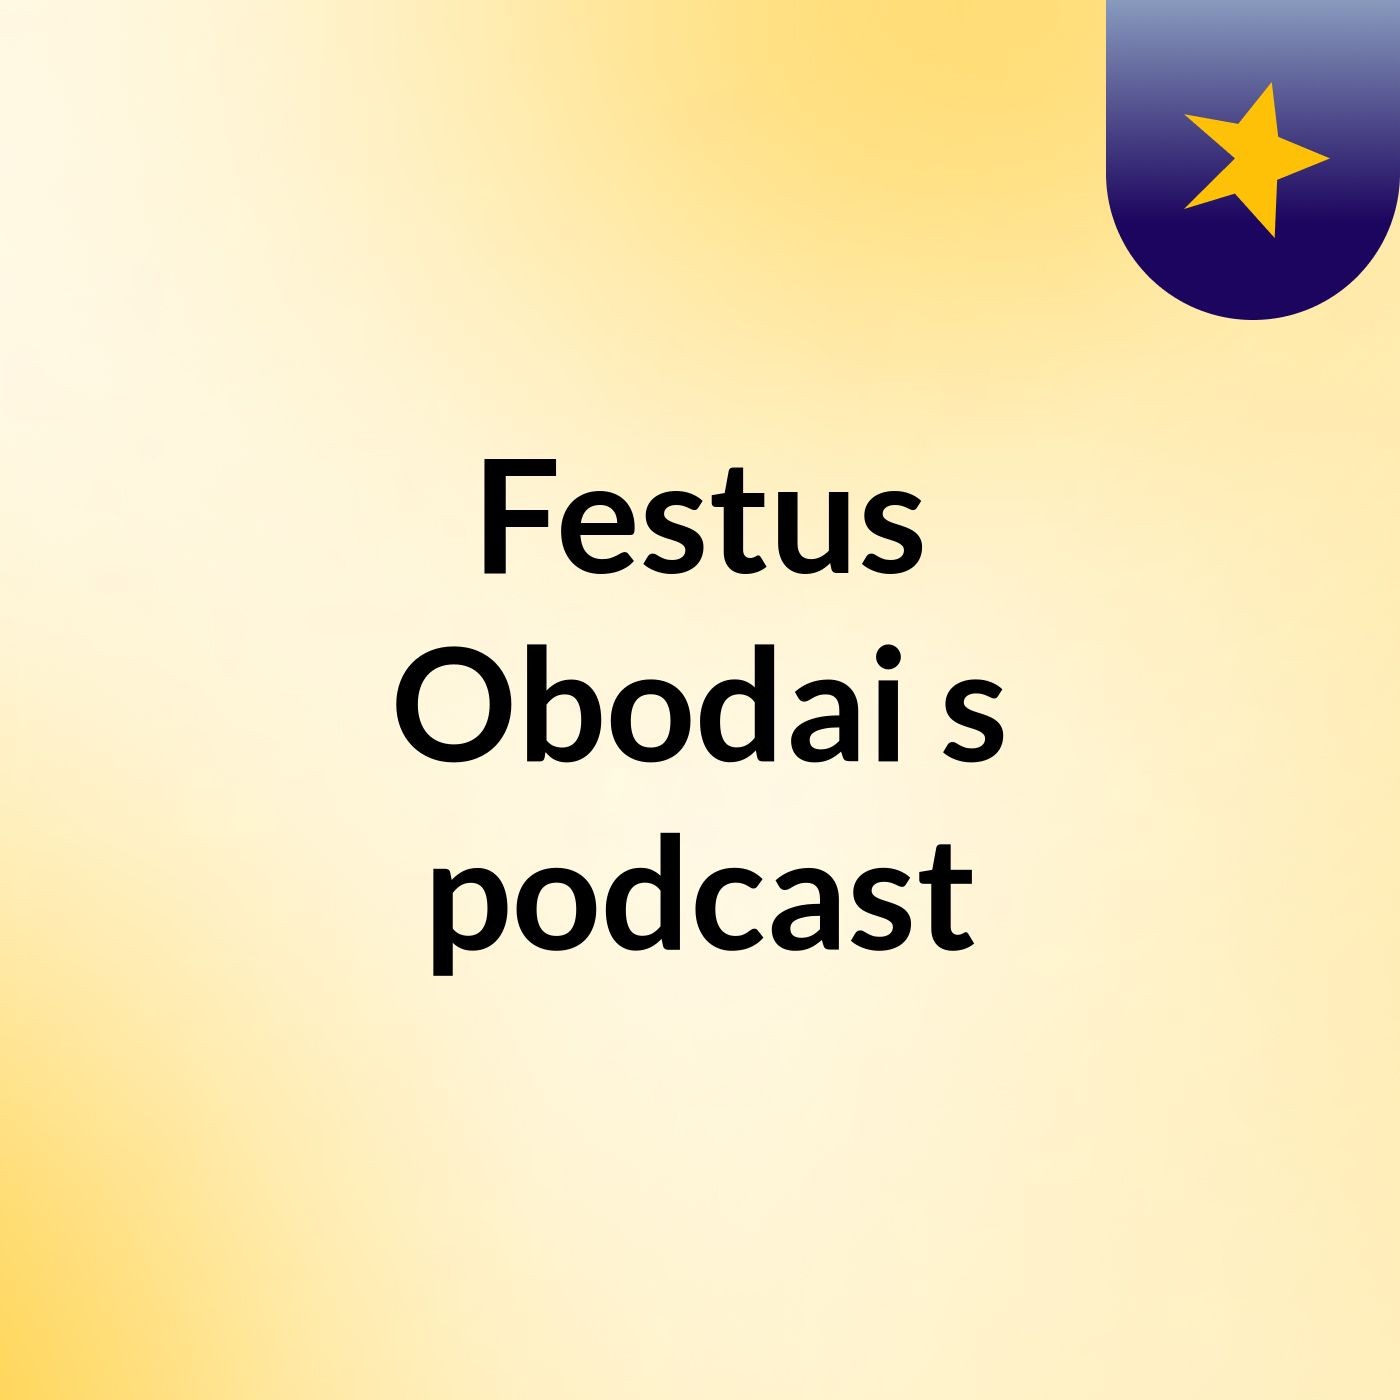 Episode 3 - Festus Obodai's podcast